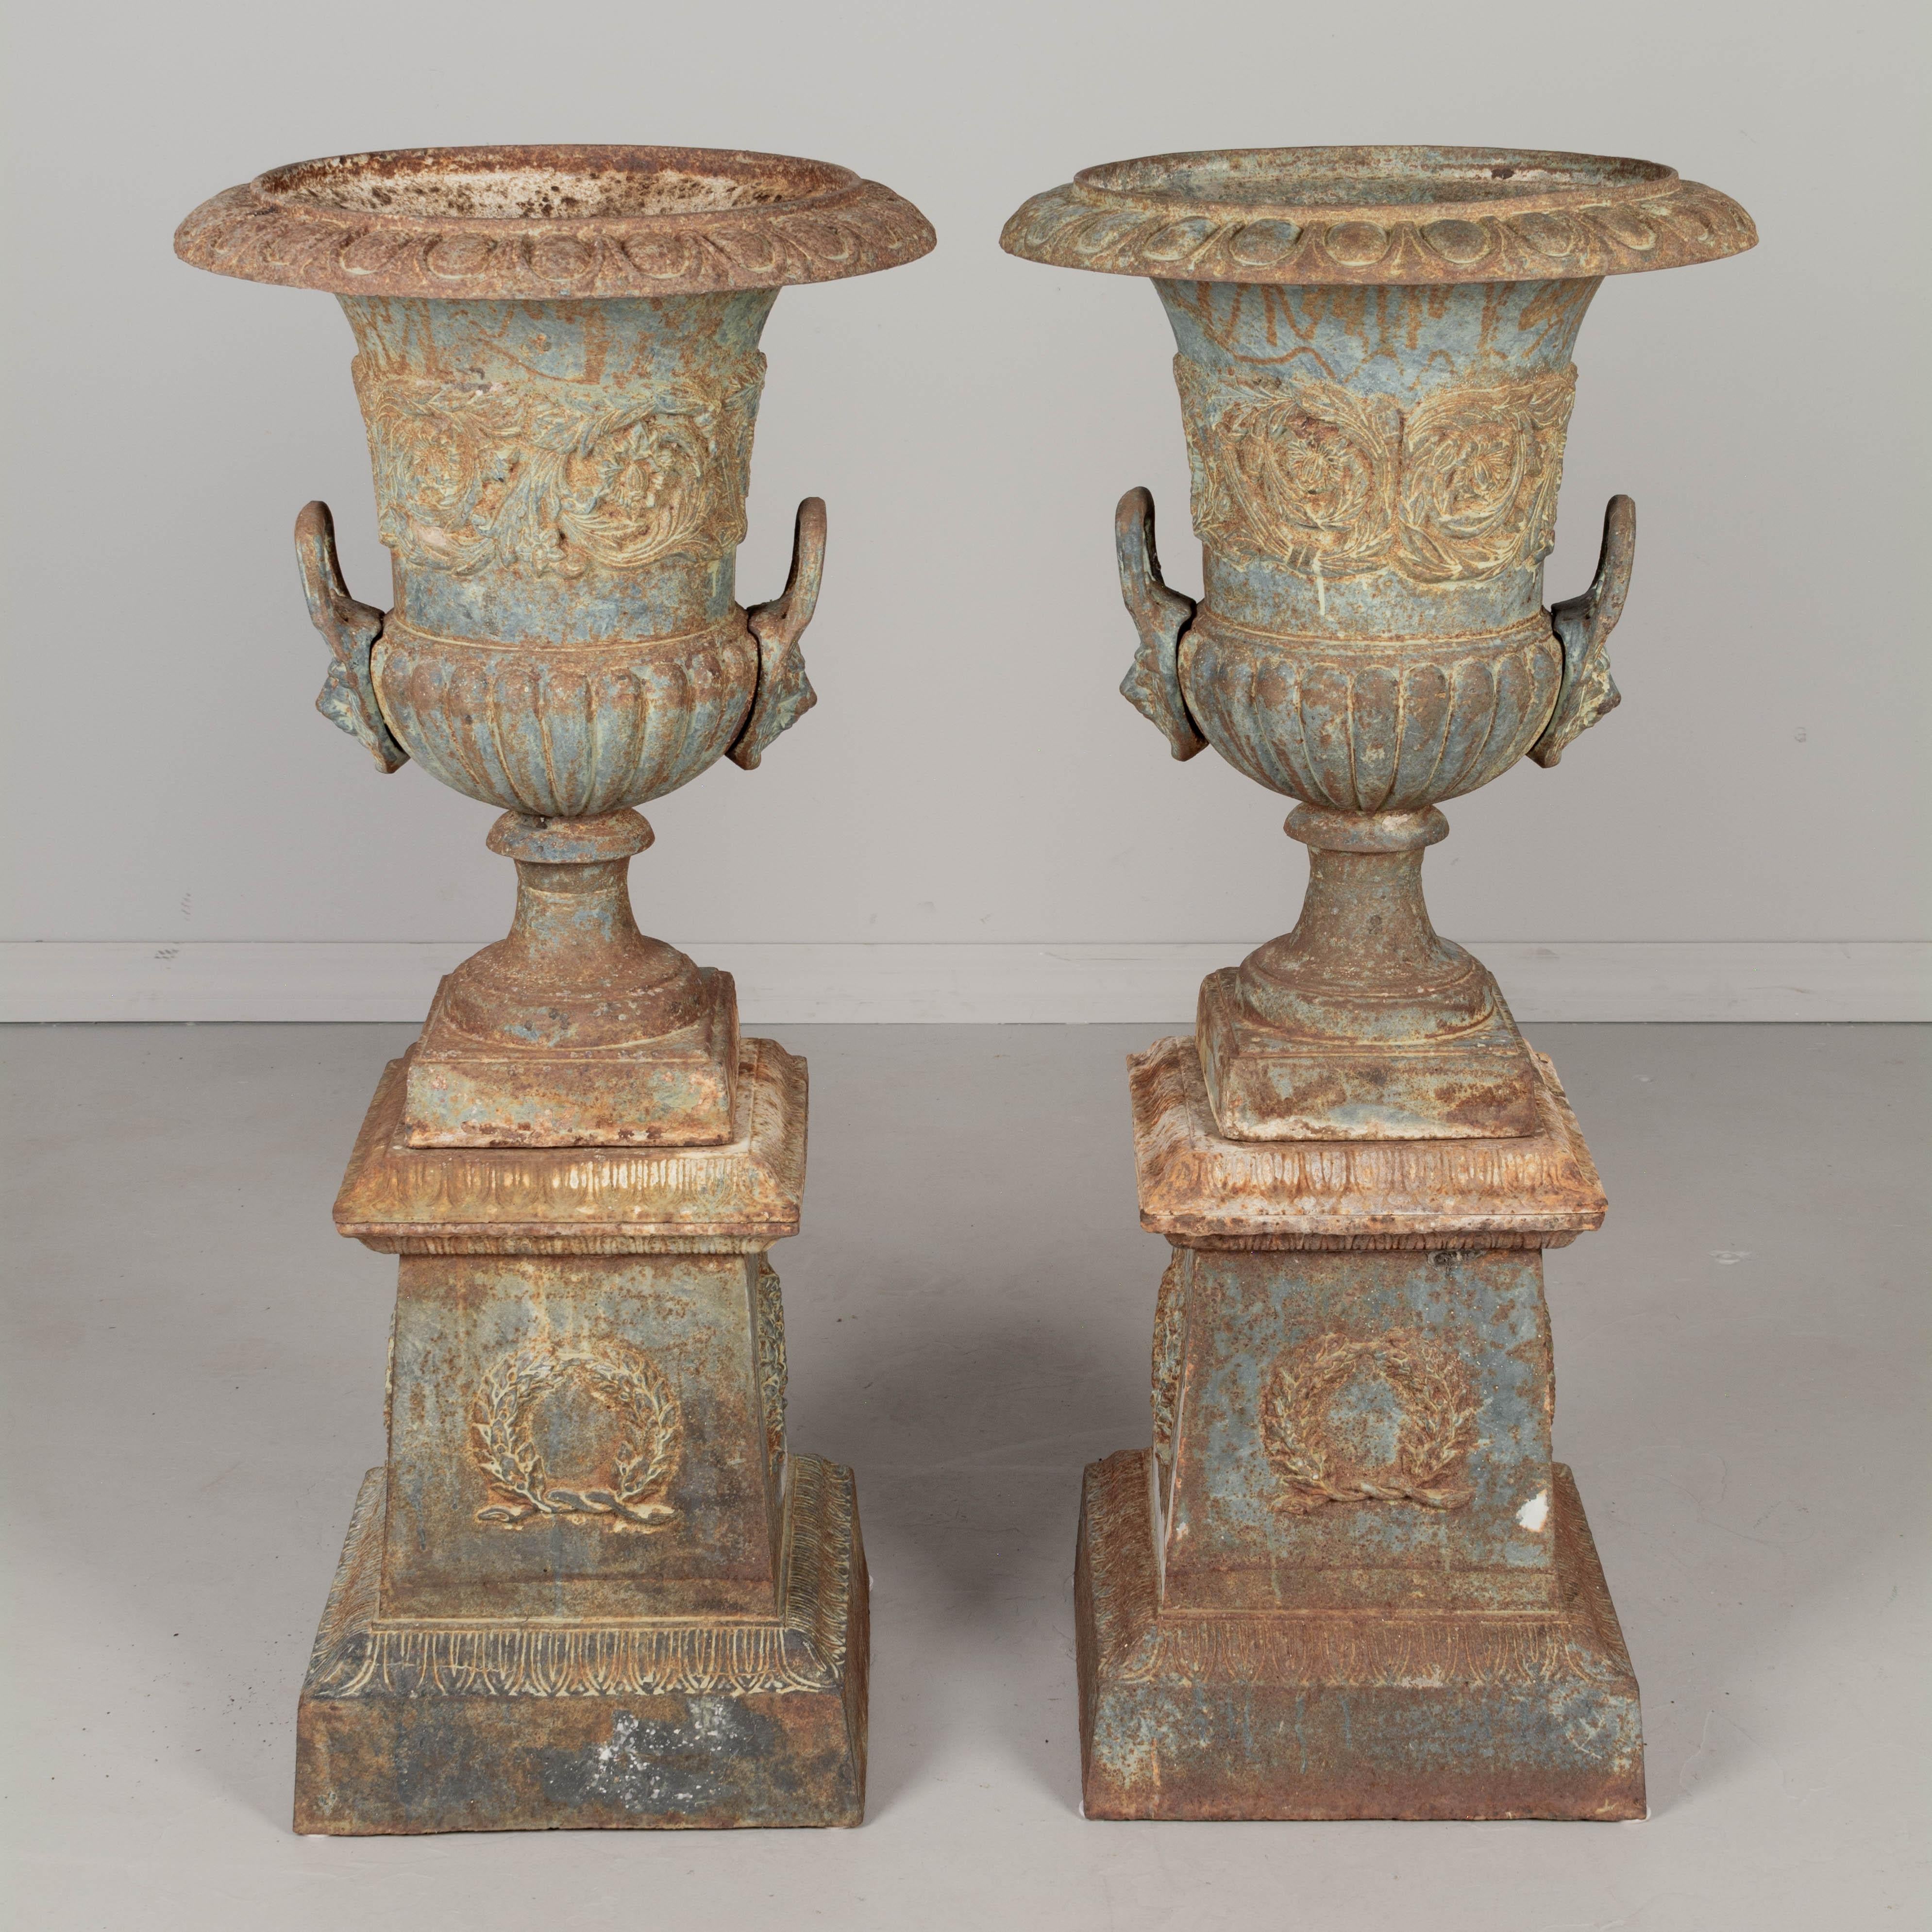 Ein Paar französische Gartenurnen aus Gusseisen aus dem 19. Jahrhundert. Die hohe Urne besteht aus drei Teilen und steht auf einem Sockel mit abnehmbarem Rand. Feine Gussdetails mit großen Löwenkopfgriffen und wirbelndem Blattrelief auf der